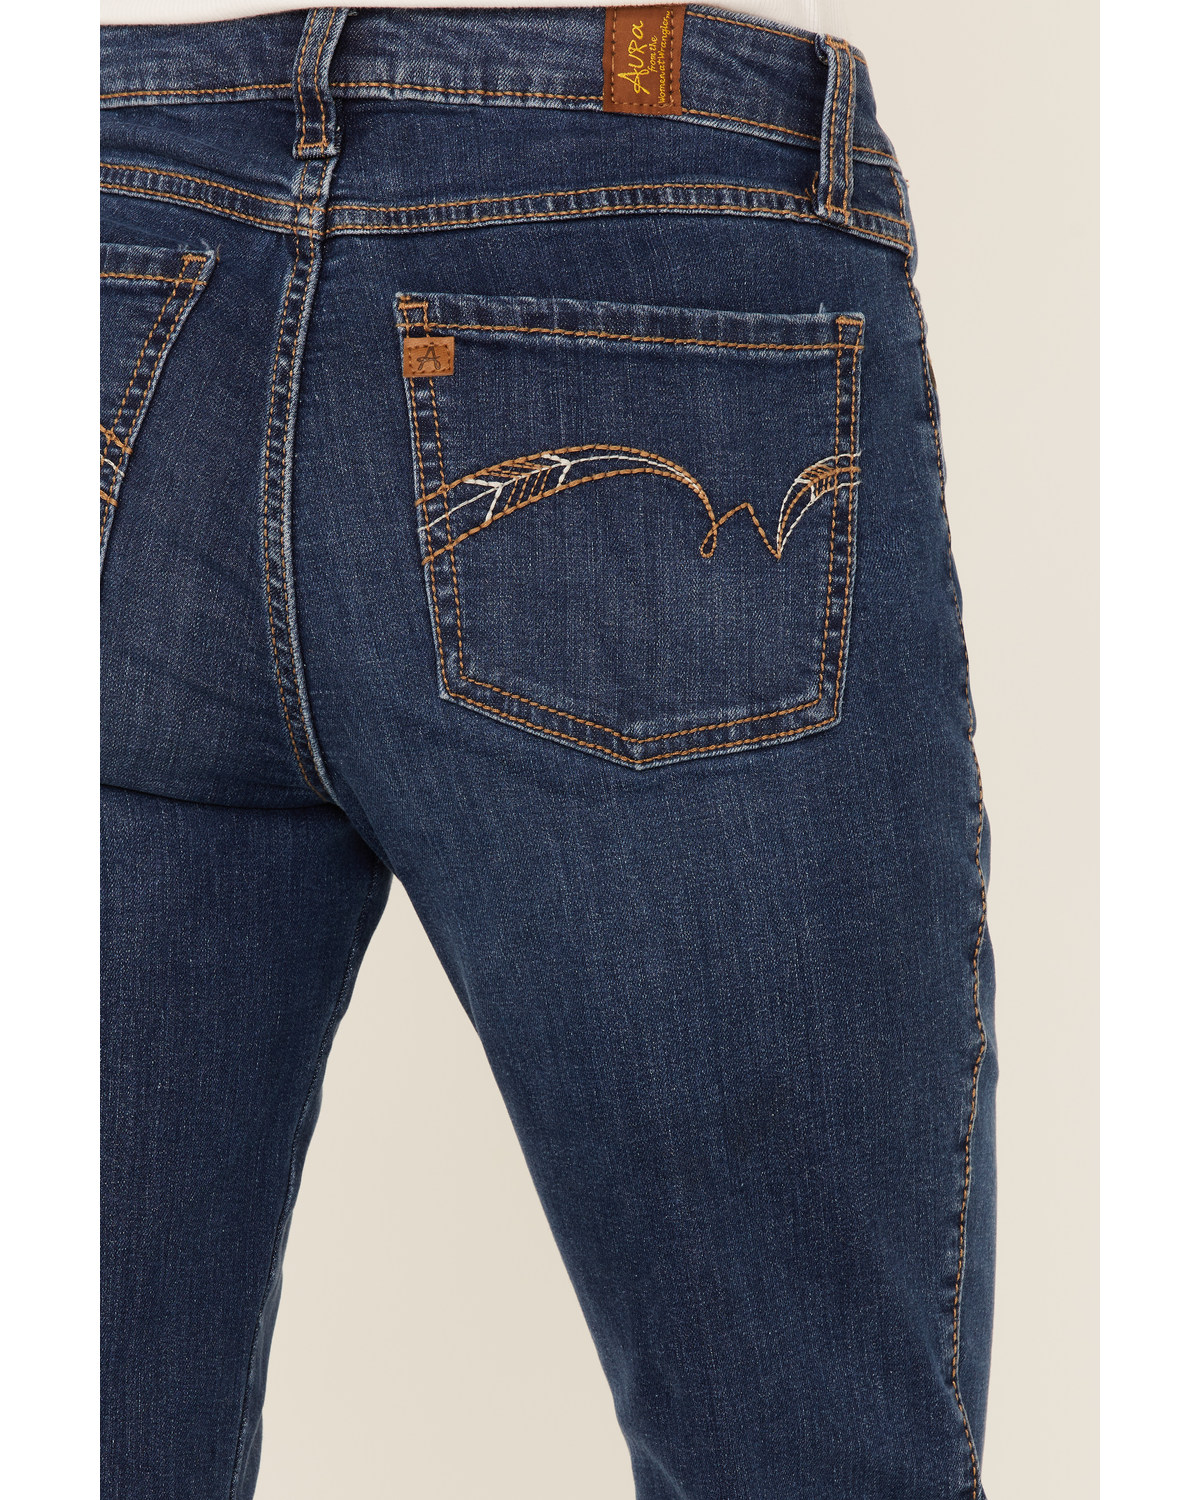 Wrangler Women's Aura Jennifer Dark Wash Bootcut Jeans | Boot Barn